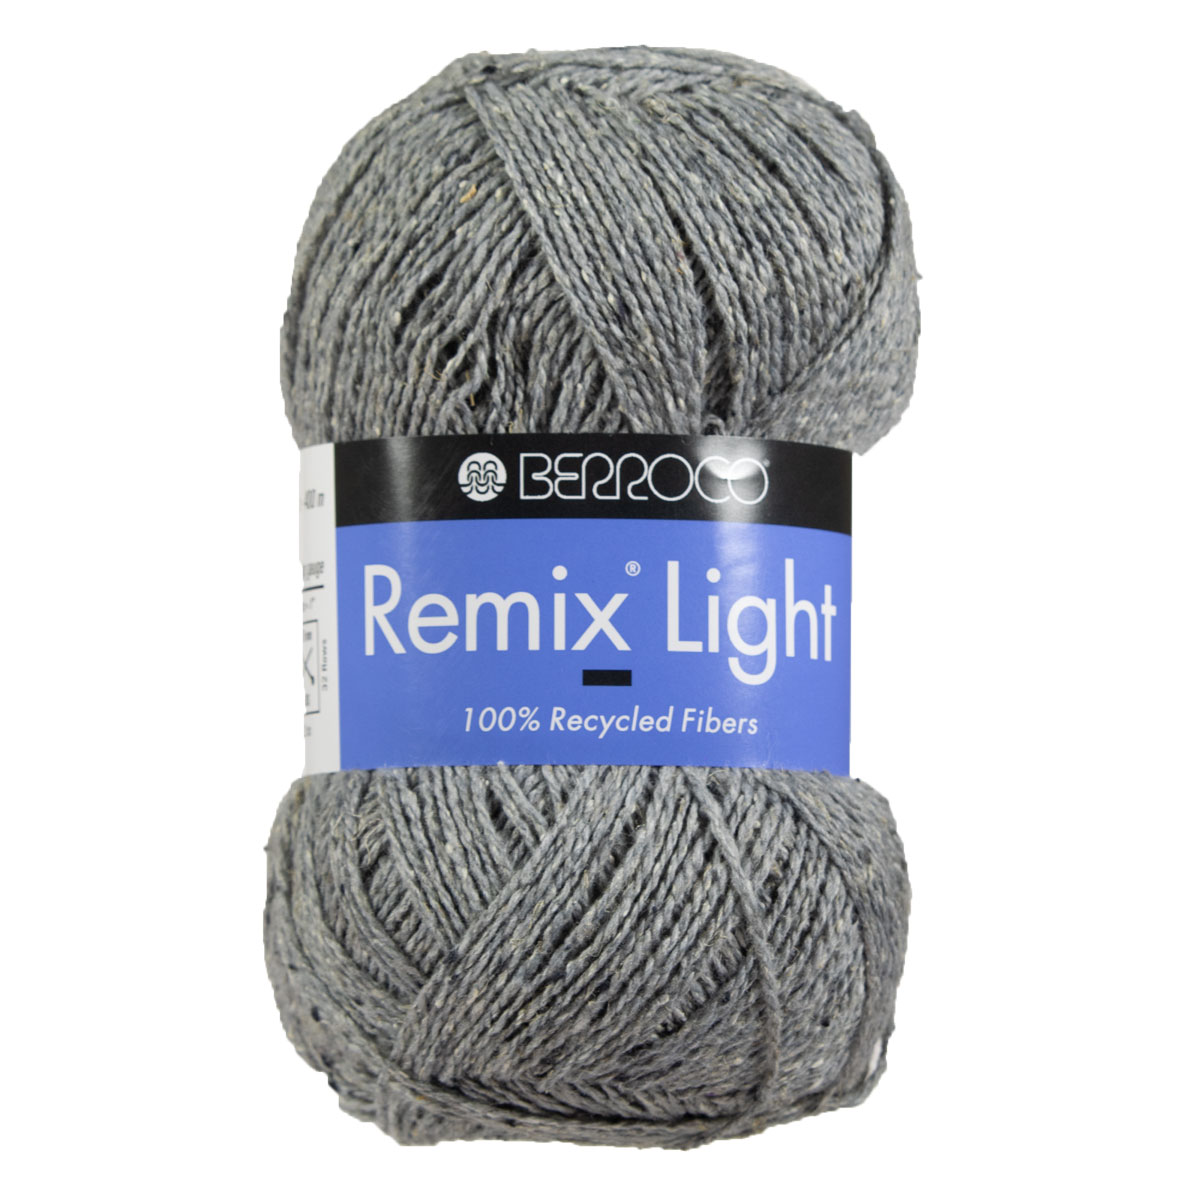 Berroco Remix Light Yarn - 6930 Smoke at Jimmy Beans Wool